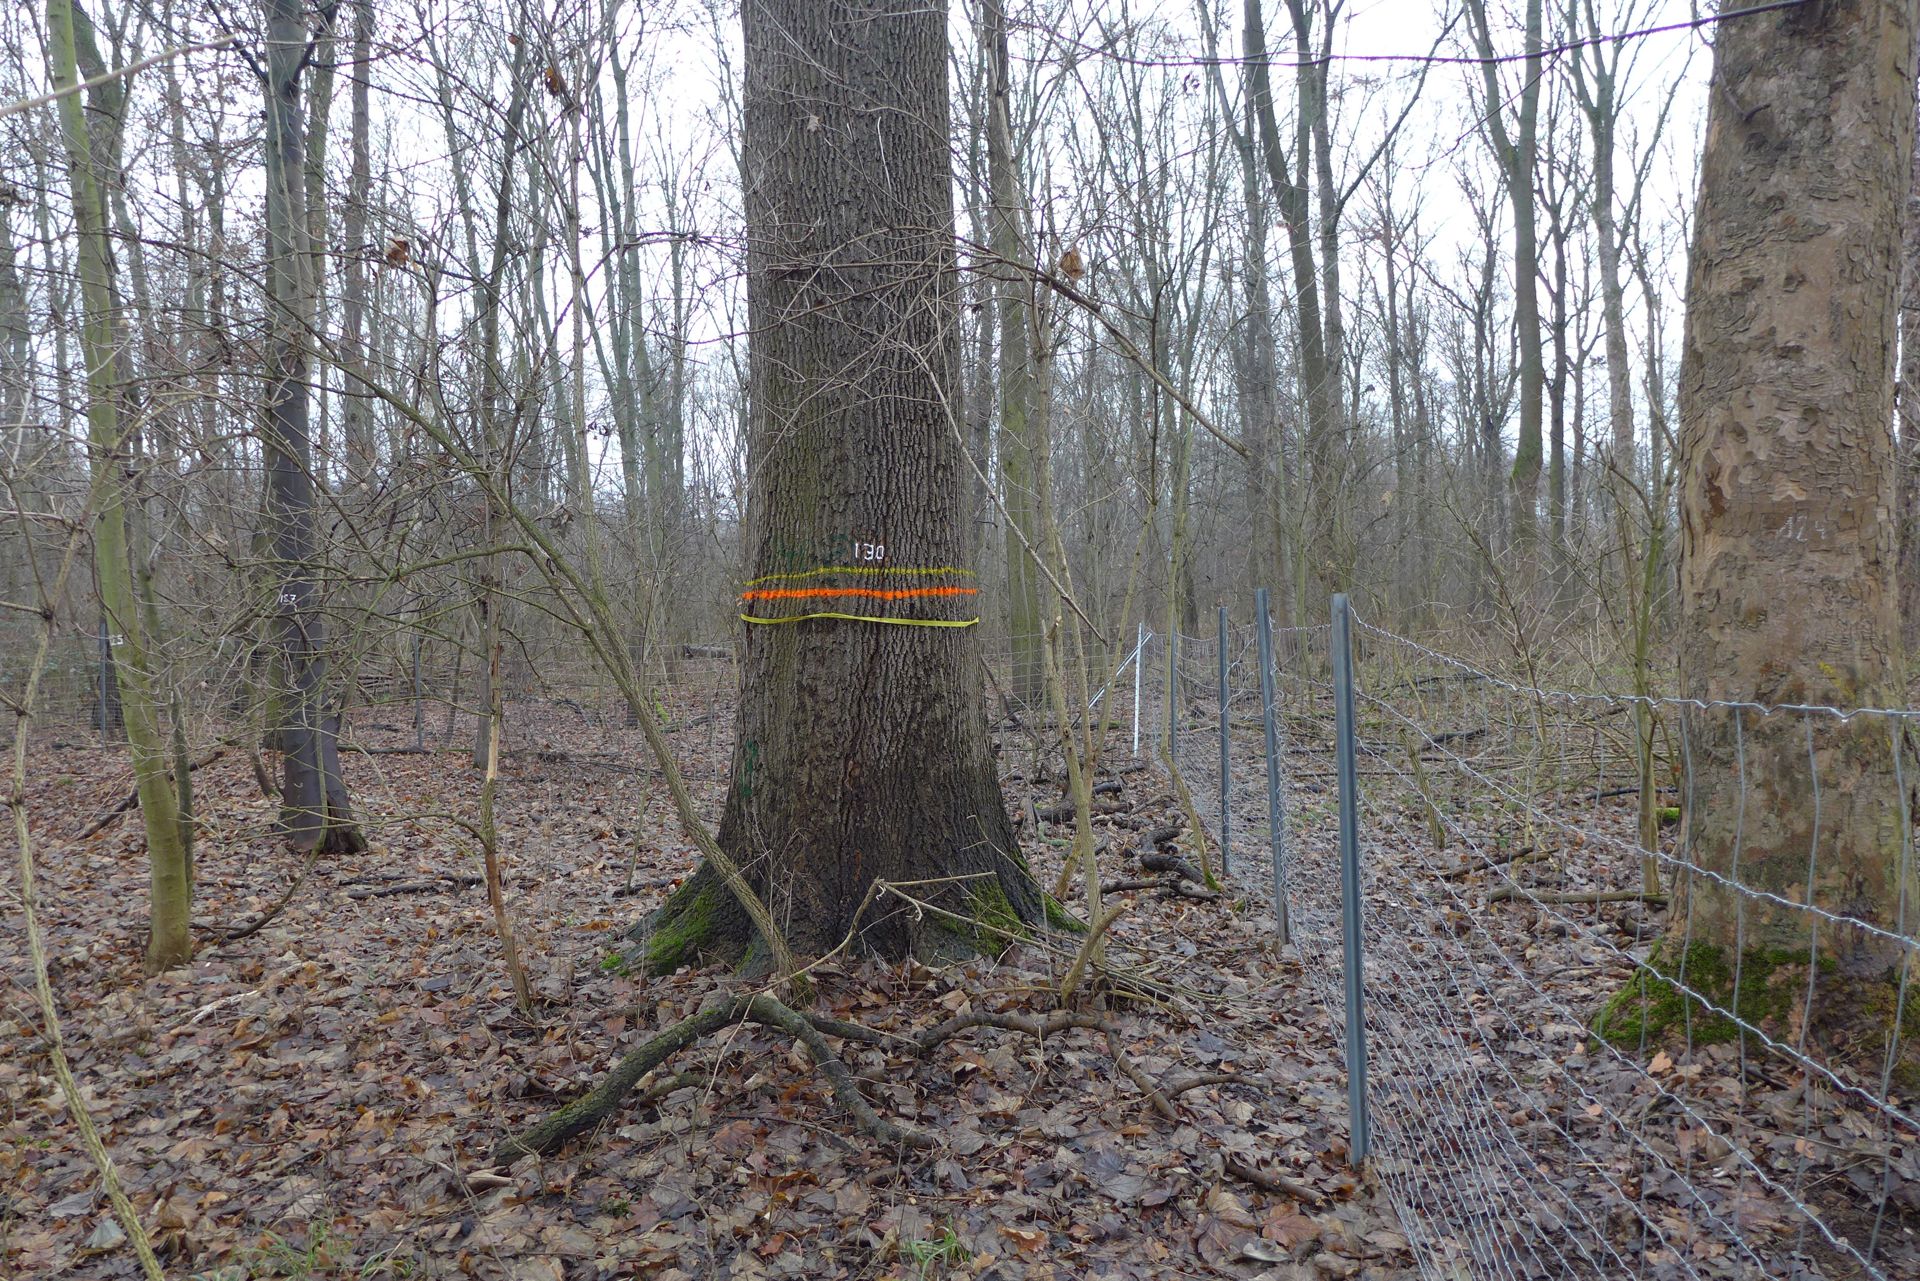 Das Foto zeigt den Blick auf die Untersuchungsfläche Leutzsch in Sachsen aufgenommen im Frühjahr. Der Bestand in ebener Lage zeichnet sich durch viele Bäume und einige sehr starke Eschen aus. Es gibt einen dichten Zwischenstand und ein wenig Verjüngung. Die Bodenvegetation ist schütter. Das Bild zeigt außerdem die Zäunung der IBF+-Fläche und die dauerhafte Markierung der Probebäume.